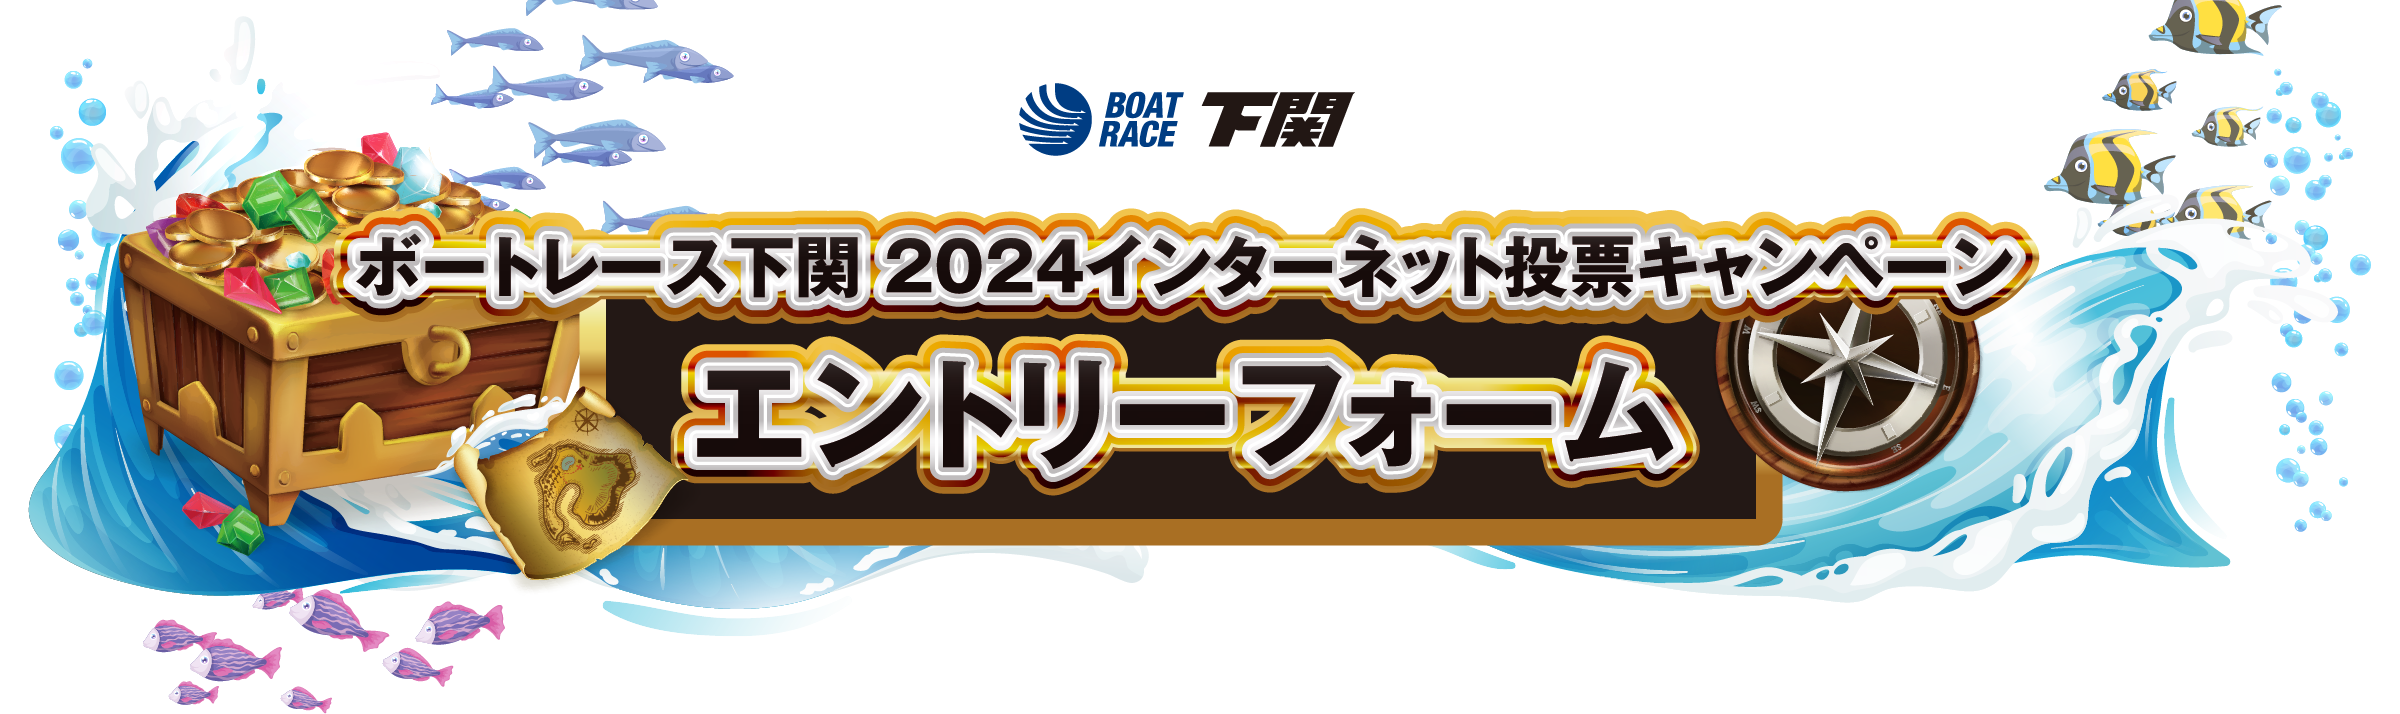 ボートレース下関 2024インターネット投票キャンペーン エントリーフォーム